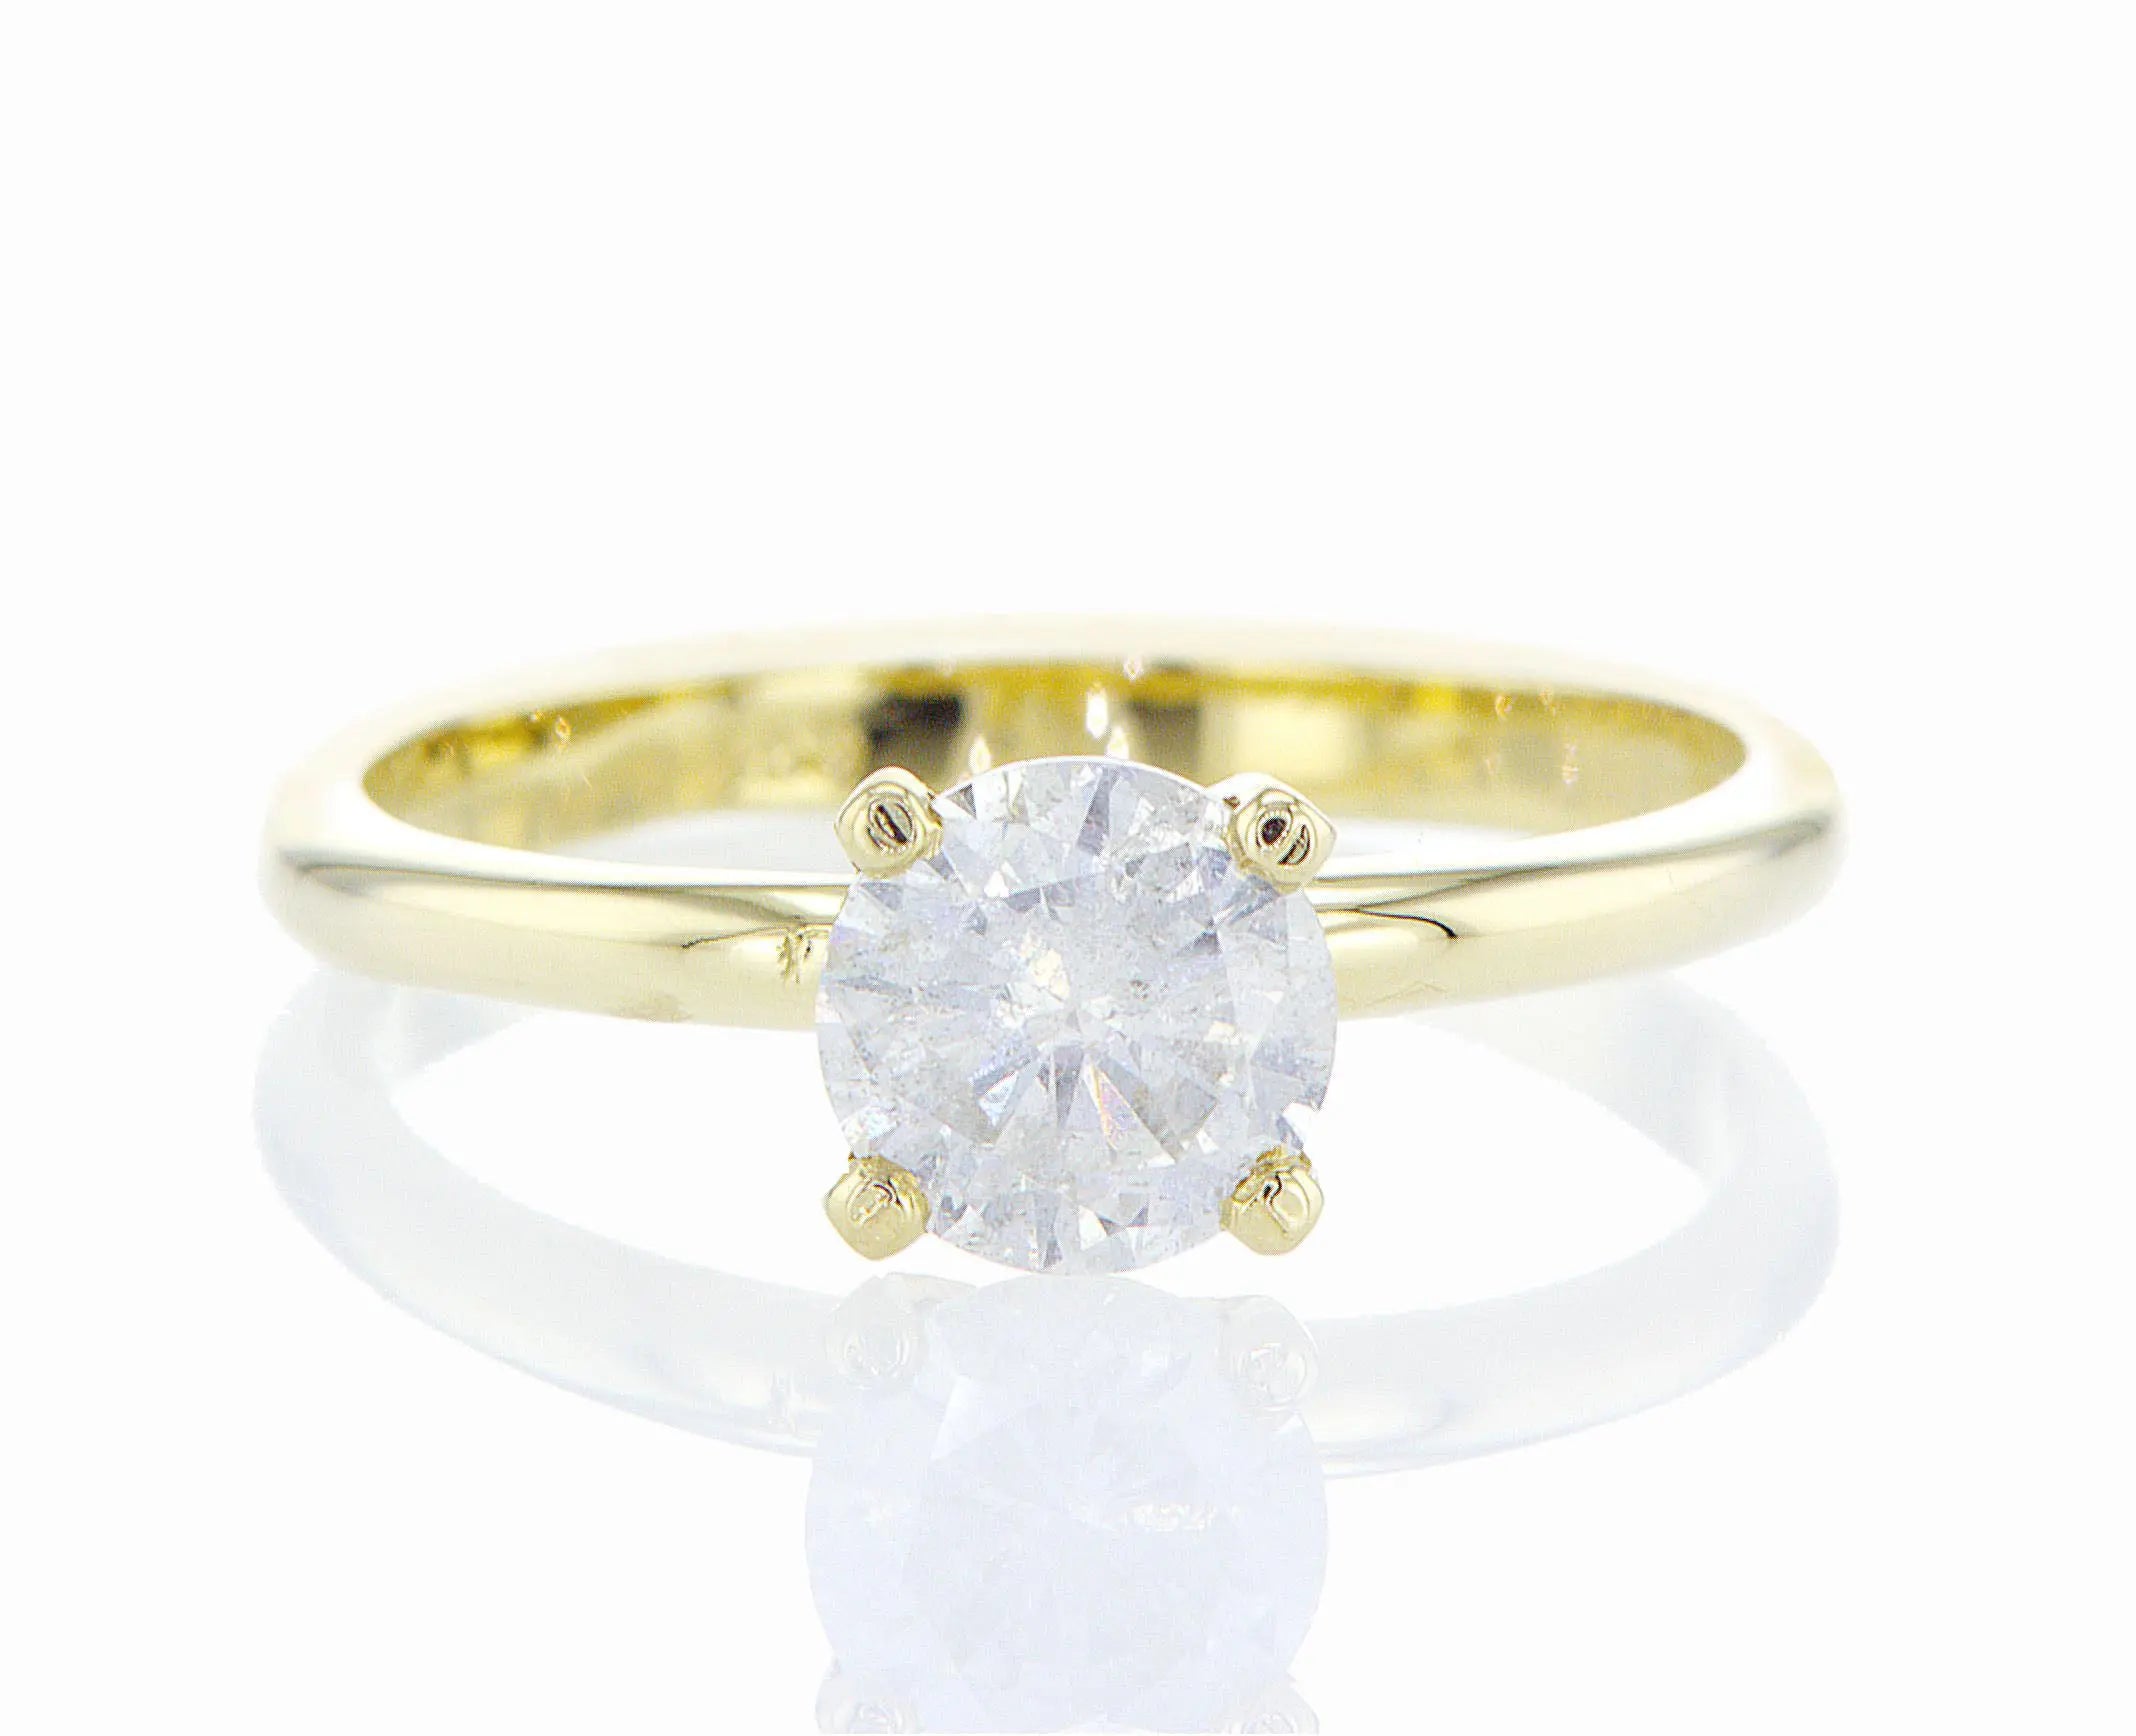 טבעת אירוסין ניצנה Fermond Jewelery טבעת אירוסין קלאסית משובצת ביהלום טבעי גדול, מרשימה, המכילה יהלומים טבעיים במשקל של 0.75 קראט כל אחד בזהב צהוב. הטבעת הזו משלבת את היוקרה והברק של טבעת יהלומים עם האלגנטיות הנצחית, ומציעה יופי ואופנה שמתאימים לכל אירוע.